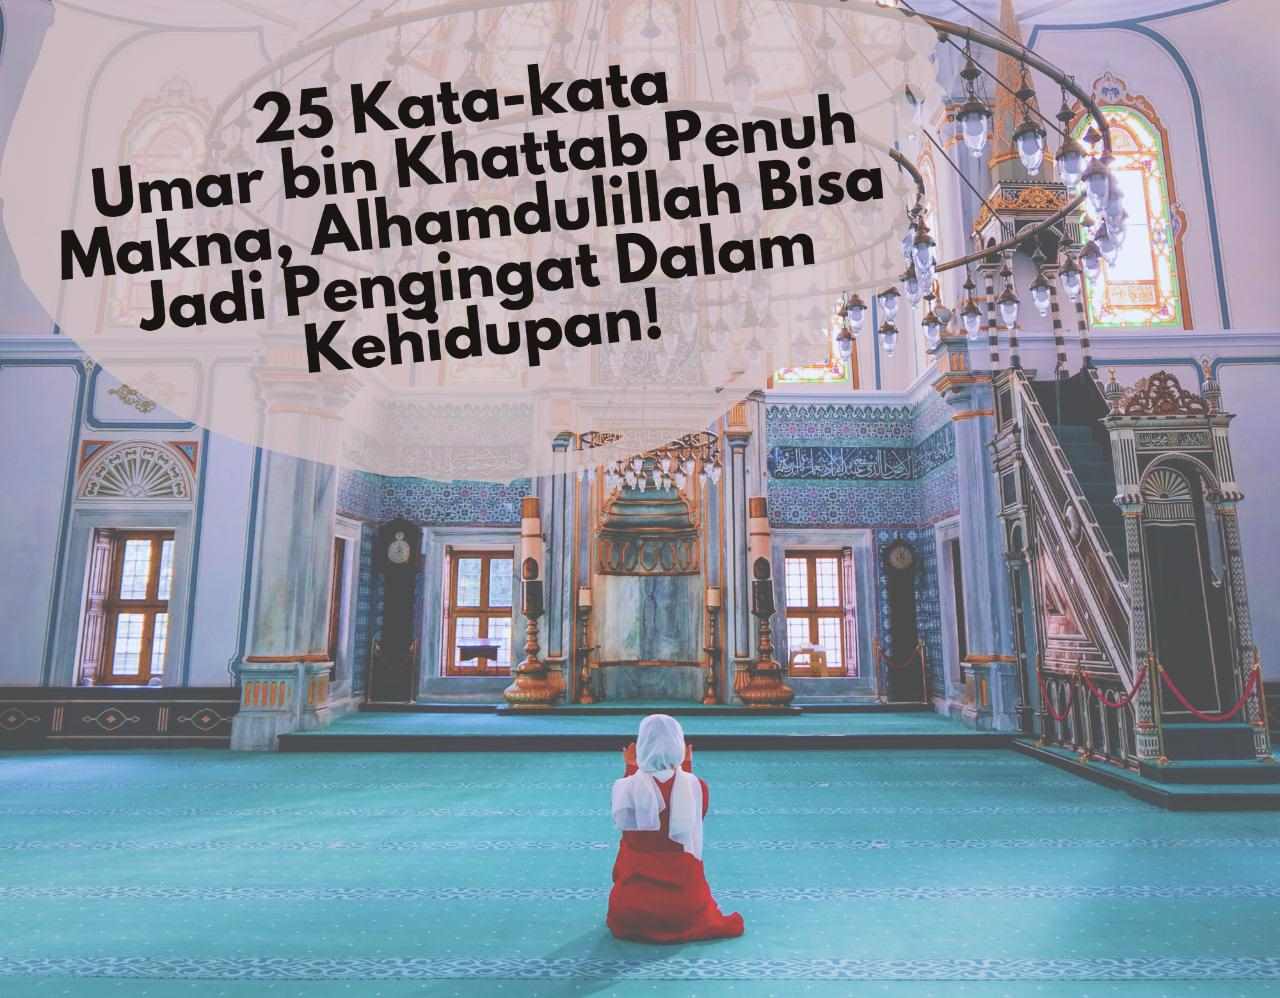 Bikin Tenang! 25 Kata-kata Umar bin Khattab Penuh Makna, Alhamdulillah Bisa Jadi Pengingat Dalam Kehidupan